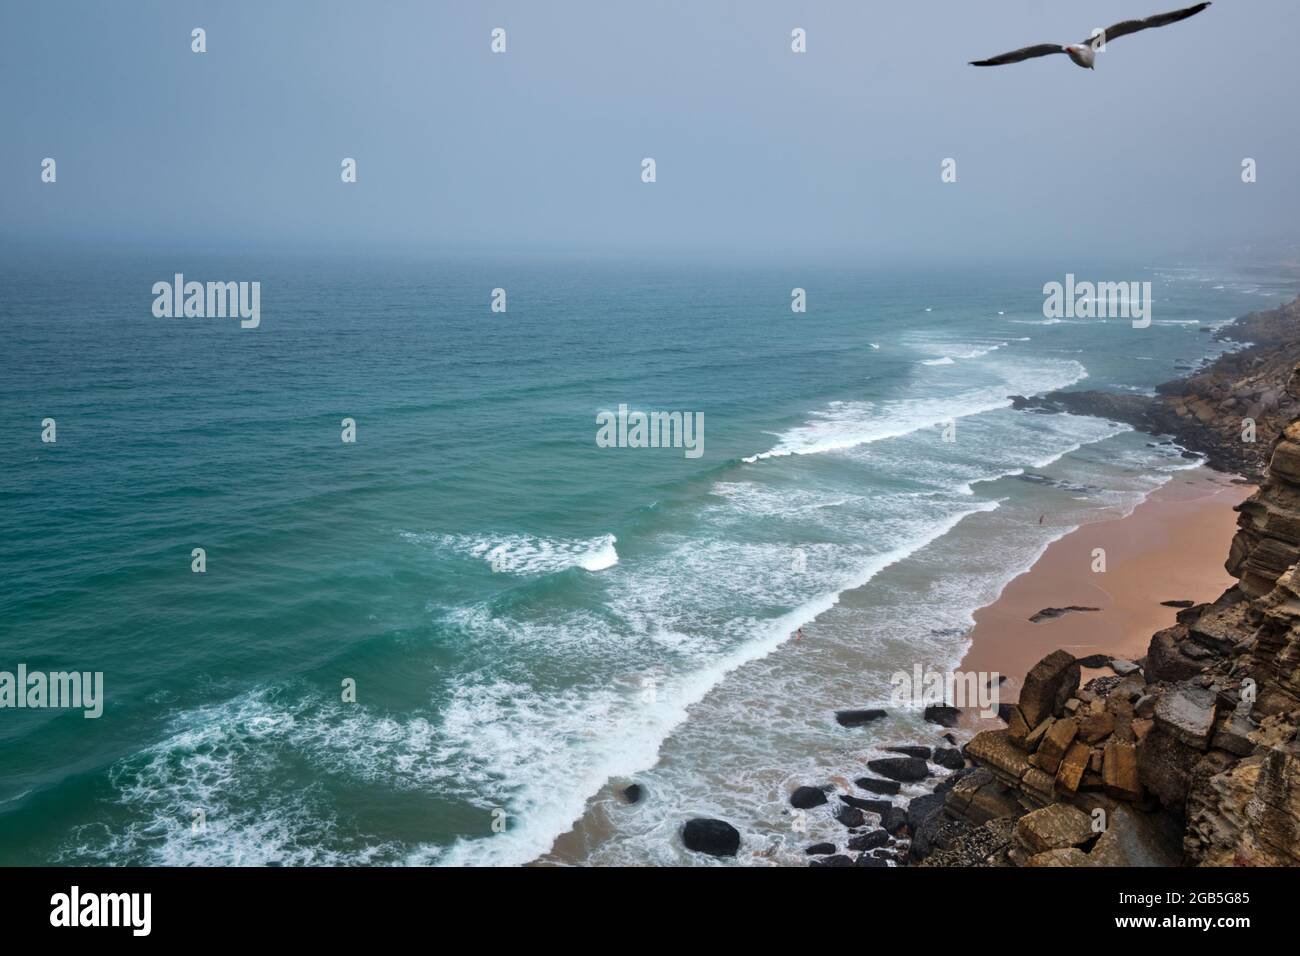 Vista de la villa turística de Azenhas do Mar en Portugal Foto de stock